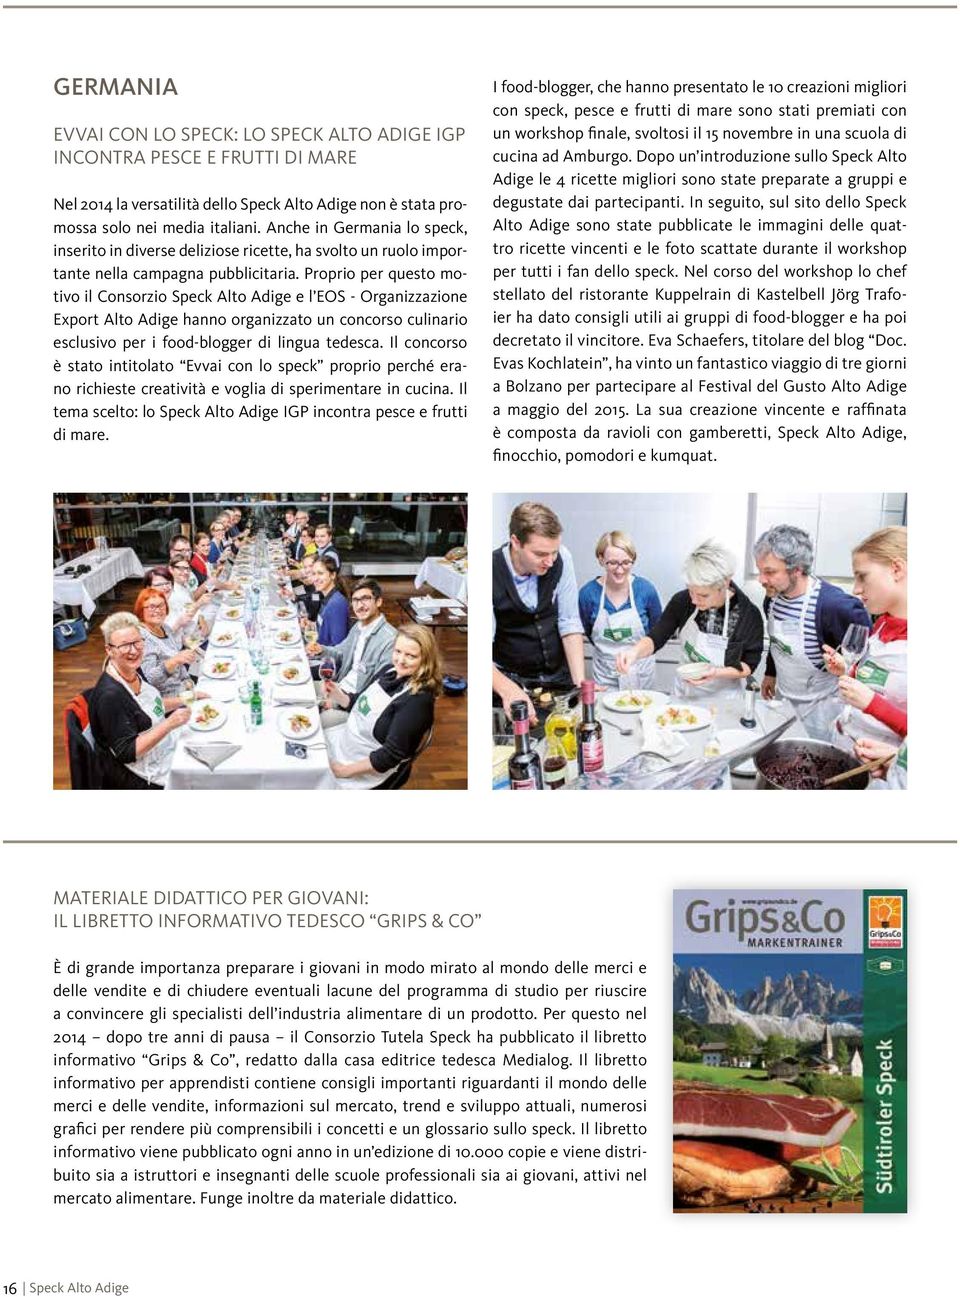 Proprio per questo motivo il Consorzio Speck Alto Adige e l EOS - Organizzazione Export Alto Adige hanno organizzato un concorso culinario esclusivo per i food-blogger di lingua tedesca.